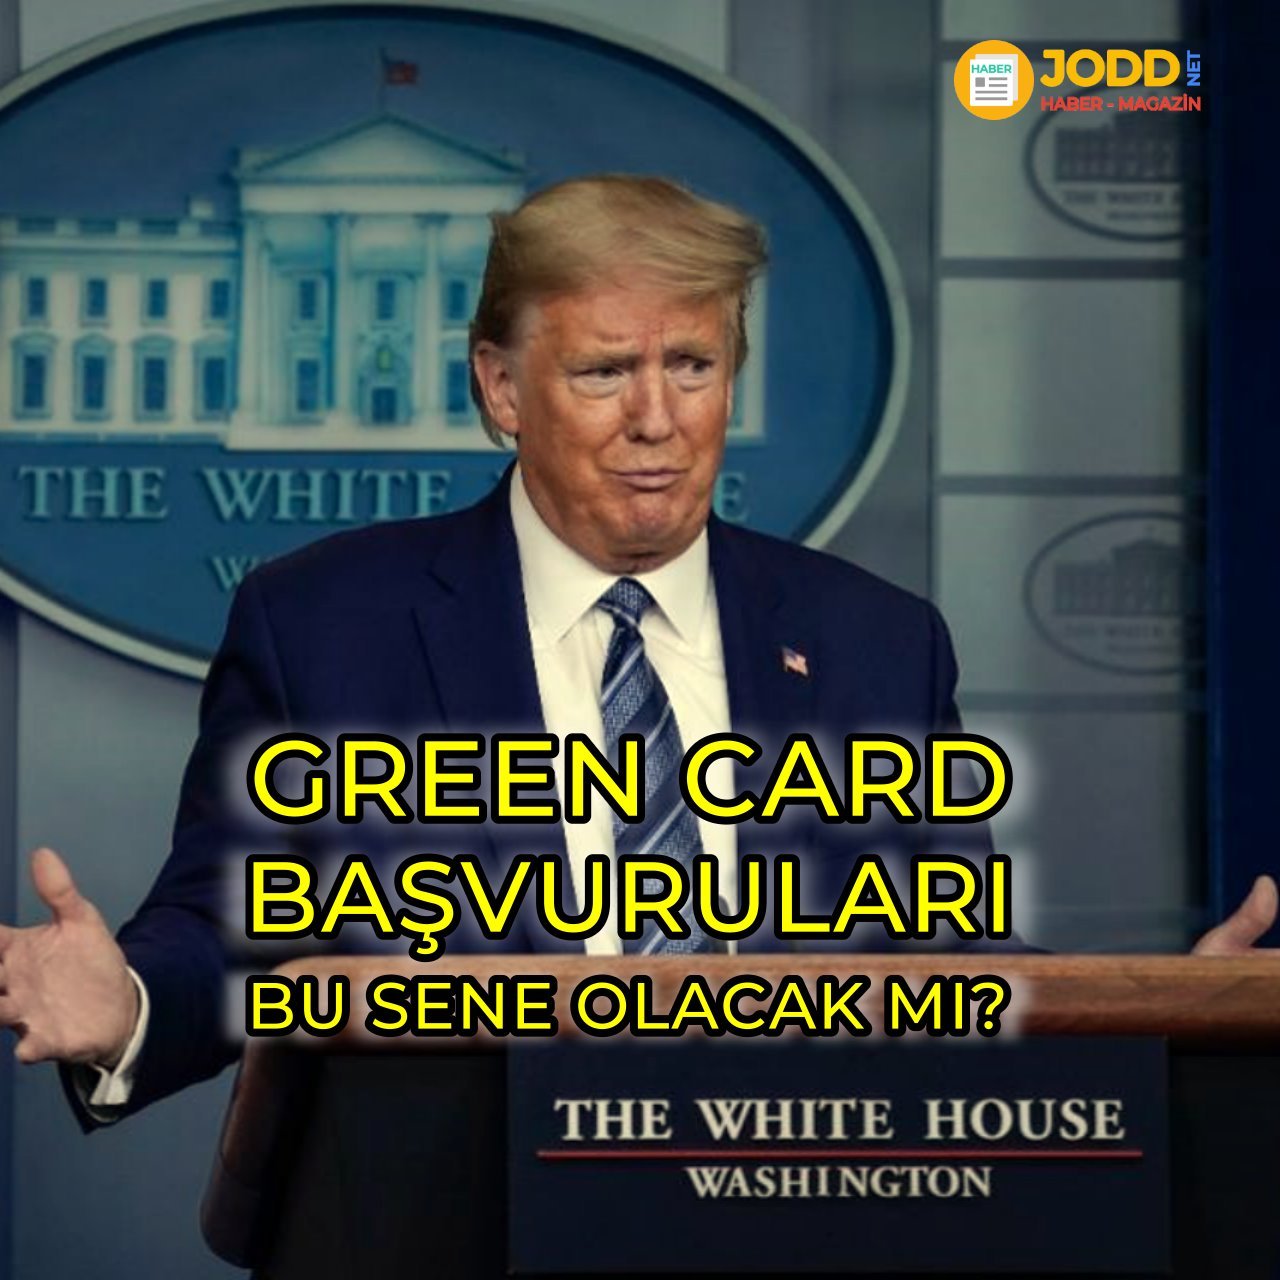 Green card başvuruları bu sene olacak mı?